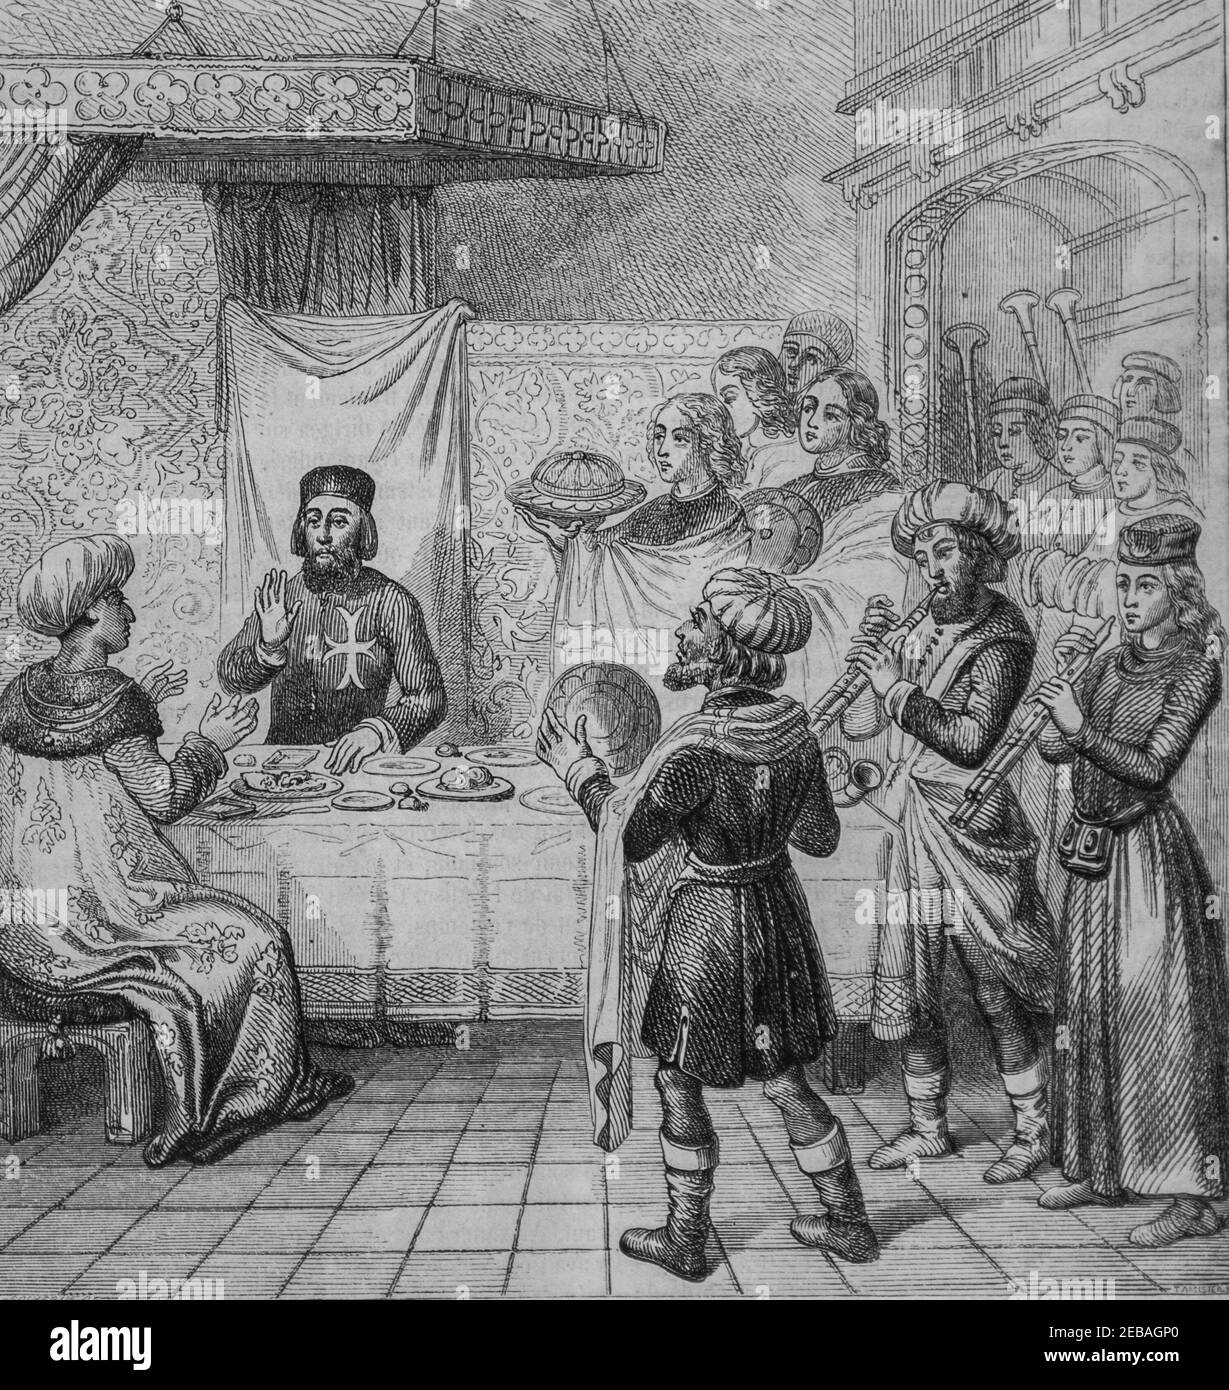 Zizim fils de mahomet,dinant a la table du Grand maitre , le Magazine pittoresque par edouard charton 1855 Stockfoto